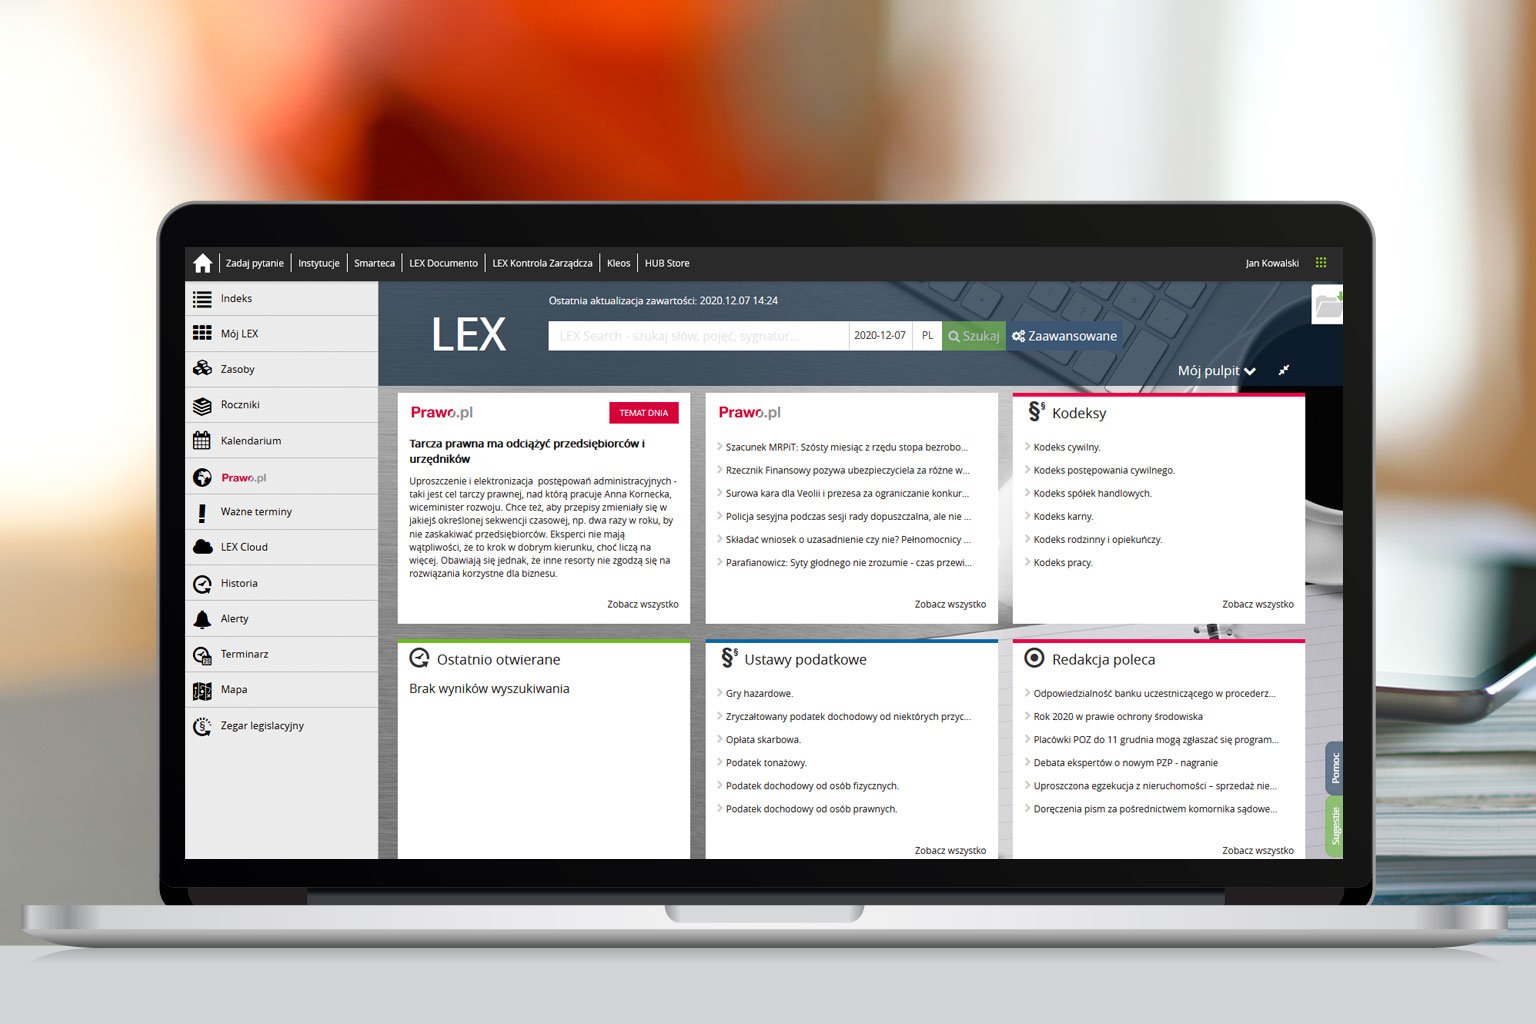 LEX Kancelaria Prawna to nowoczesny program online, dzięki któremu Twoja kancelaria zyska 24-godzinny dostęp do całego prawodawstwa polskiego i europejskiego, orzecznictwa oraz komentarzy do najważniejszych ustaw.